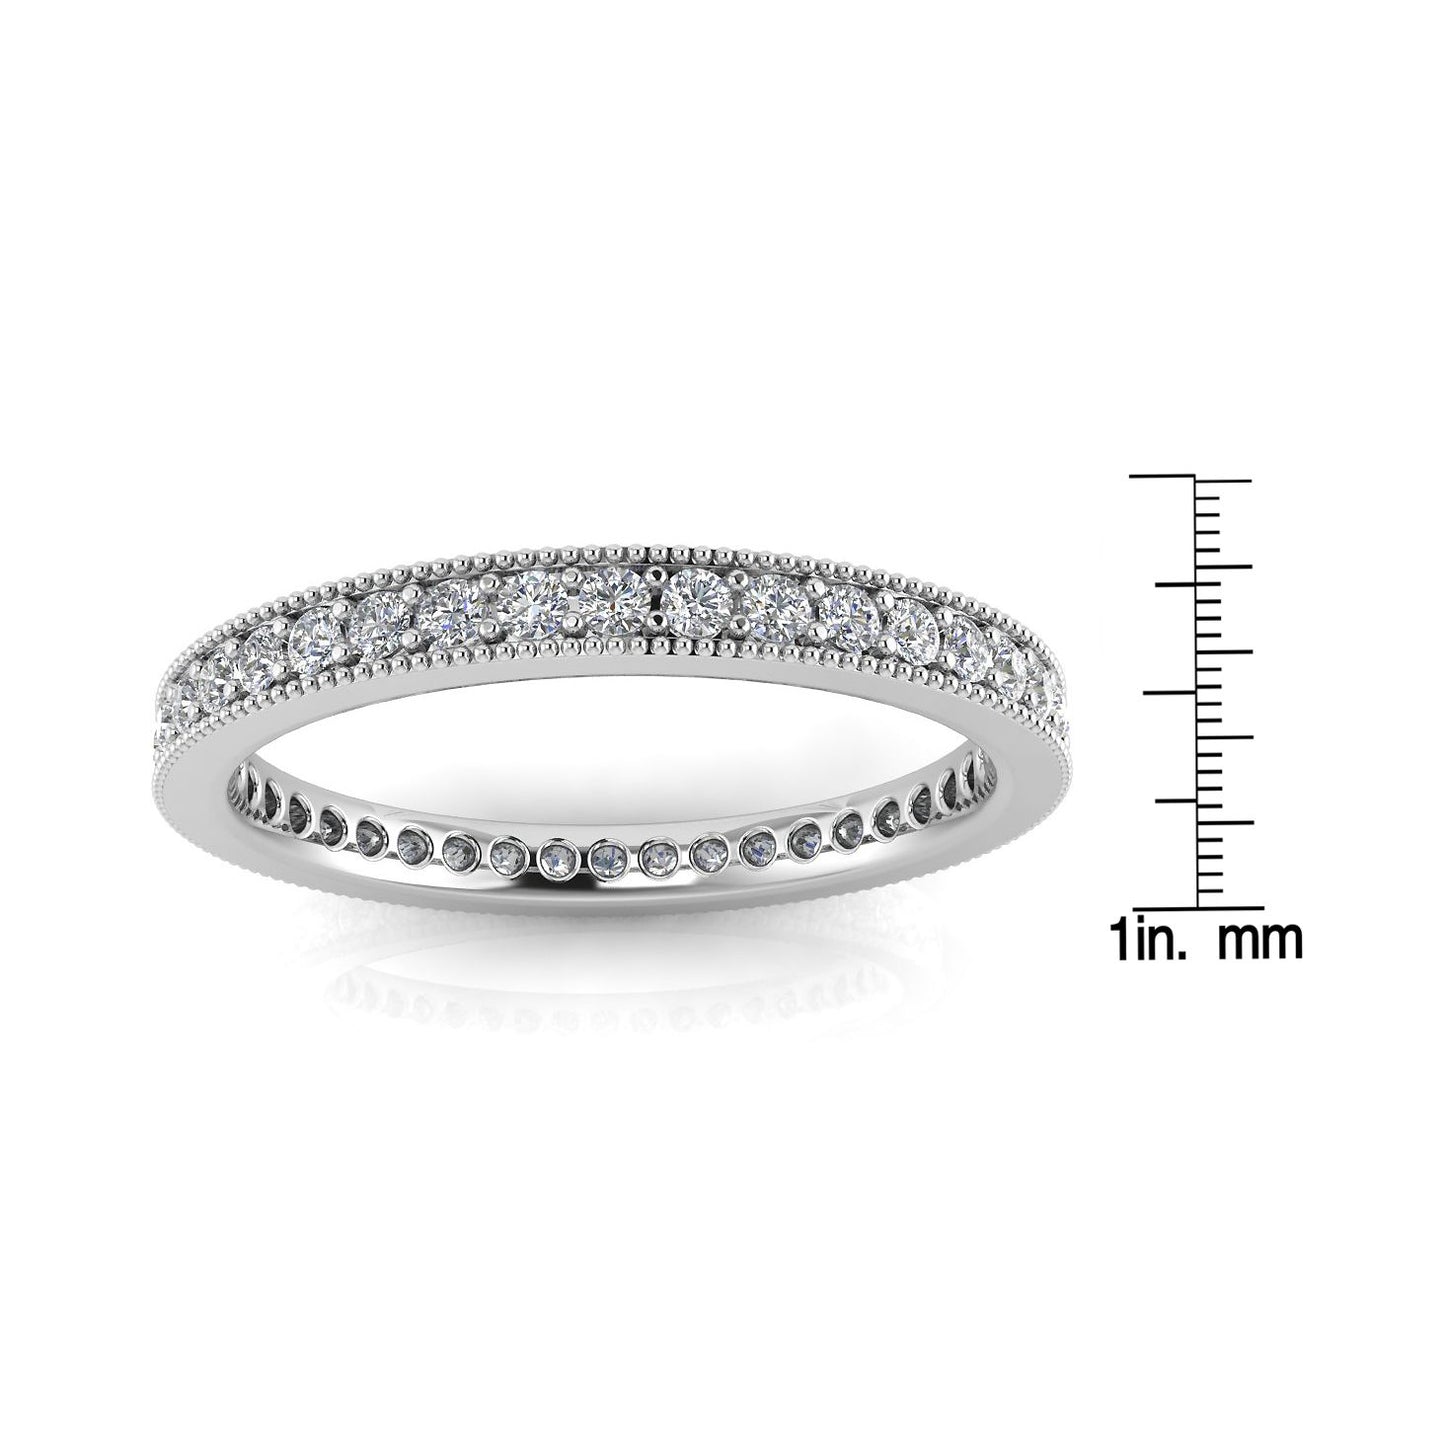 Round Brilliant Cut Diamond Pave & Milgrain Set Eternity Ring In Platinum  (0.47ct. Tw.) Ring Size 6.5